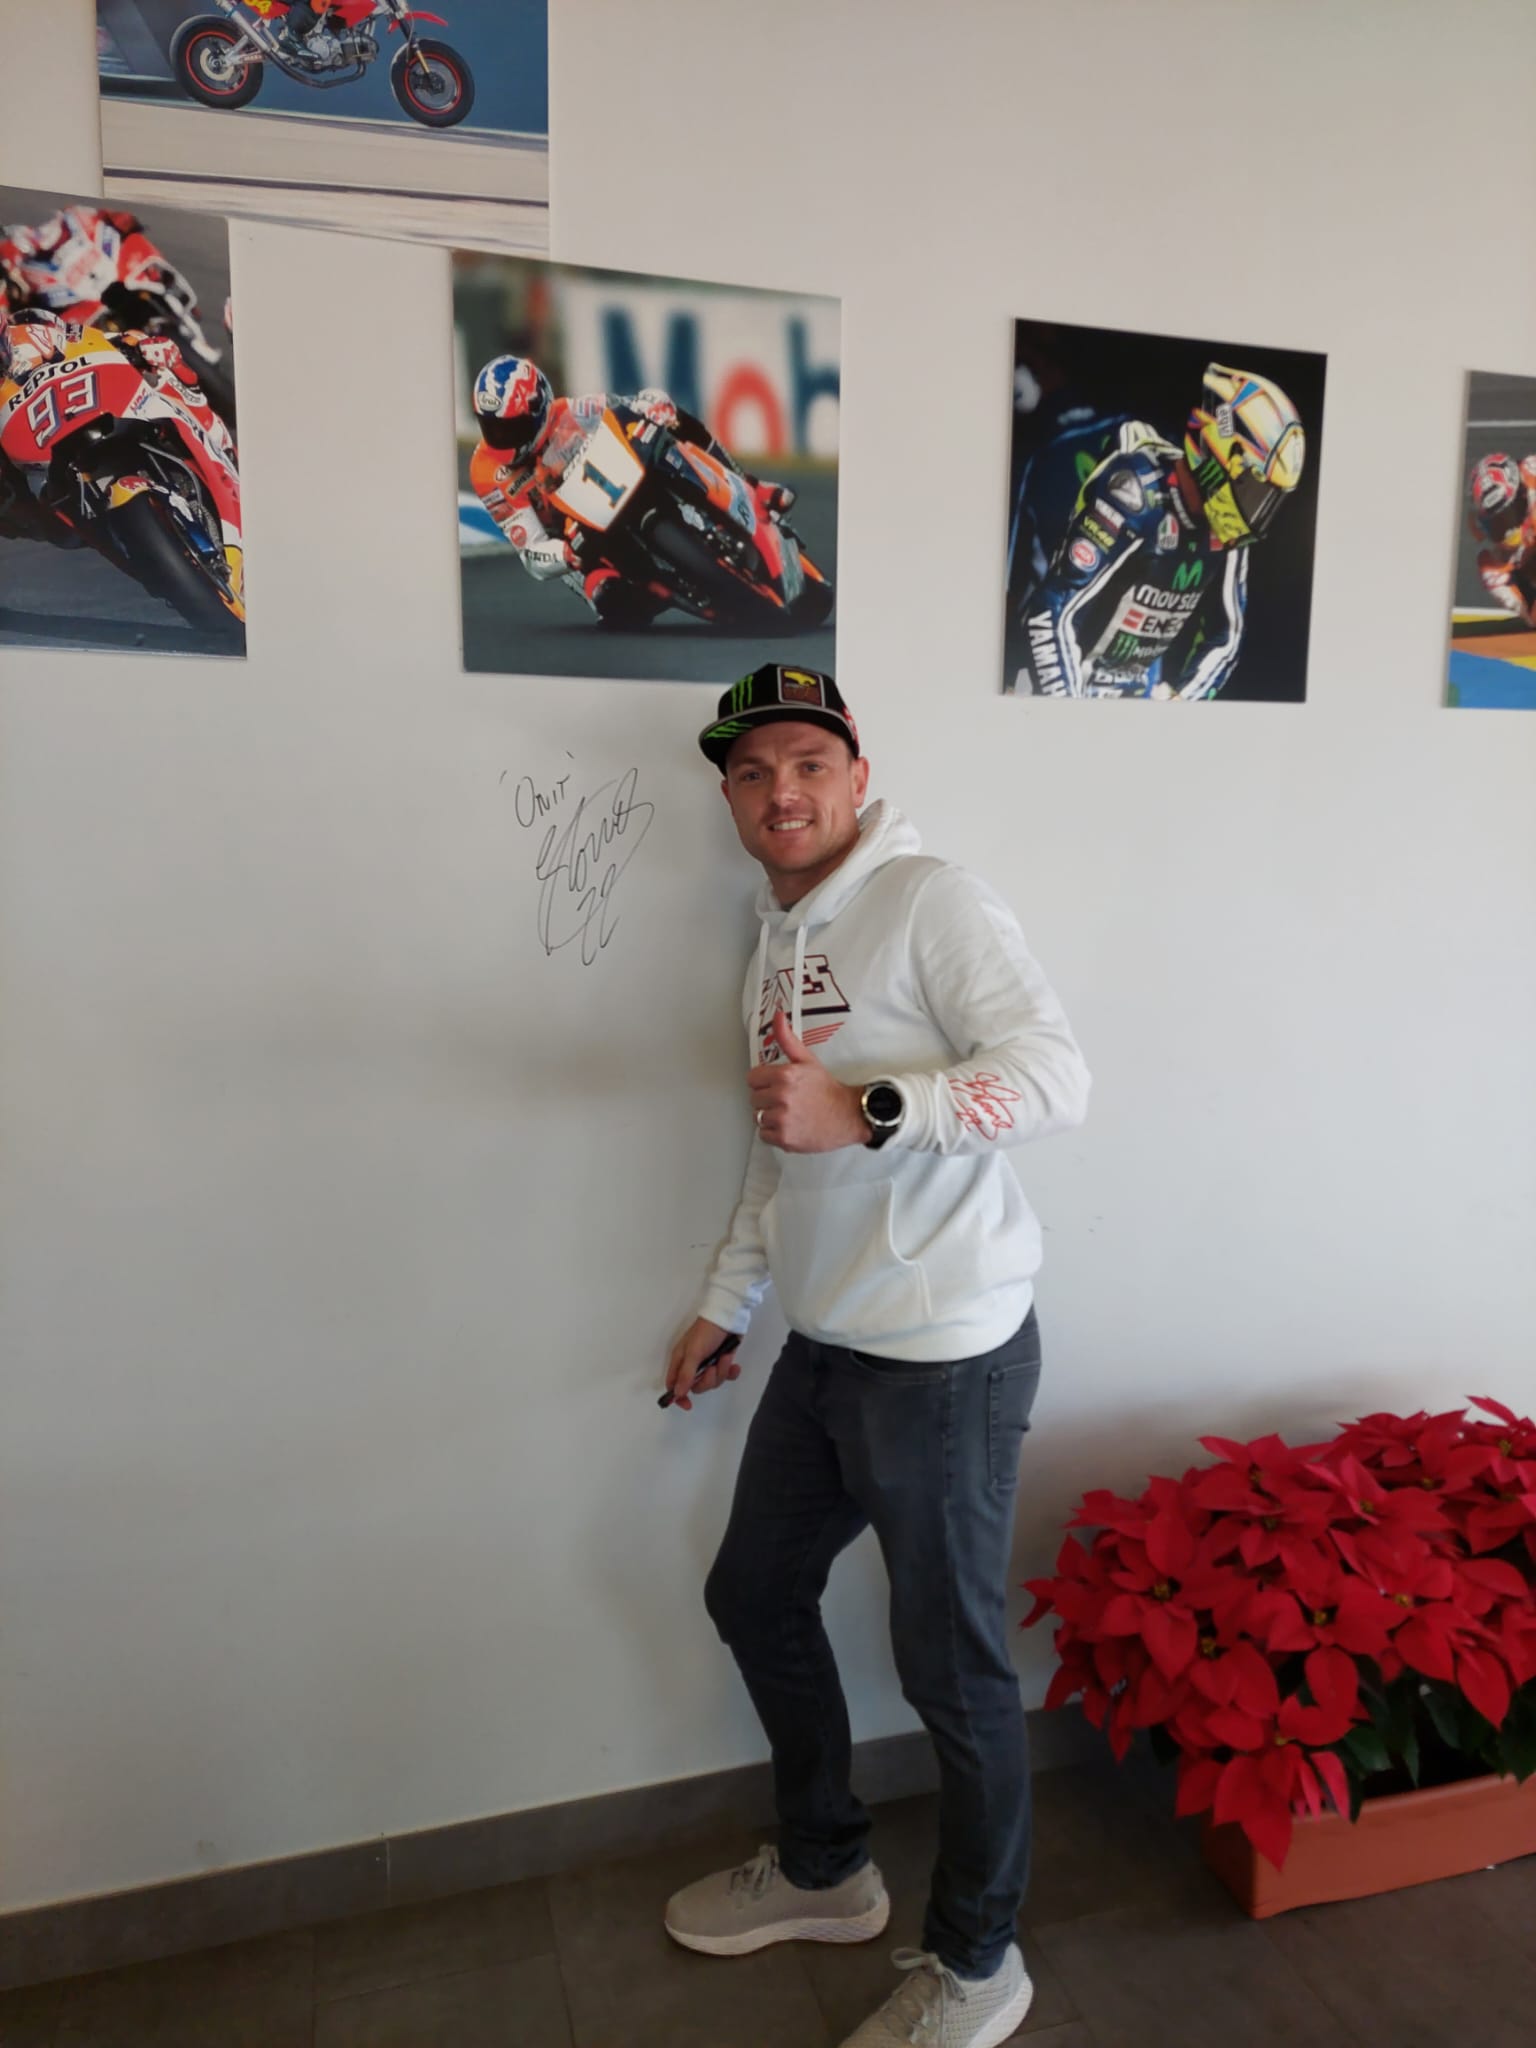 Sam Lowes, piloto de Moto2 visita nuestras instalaciones.